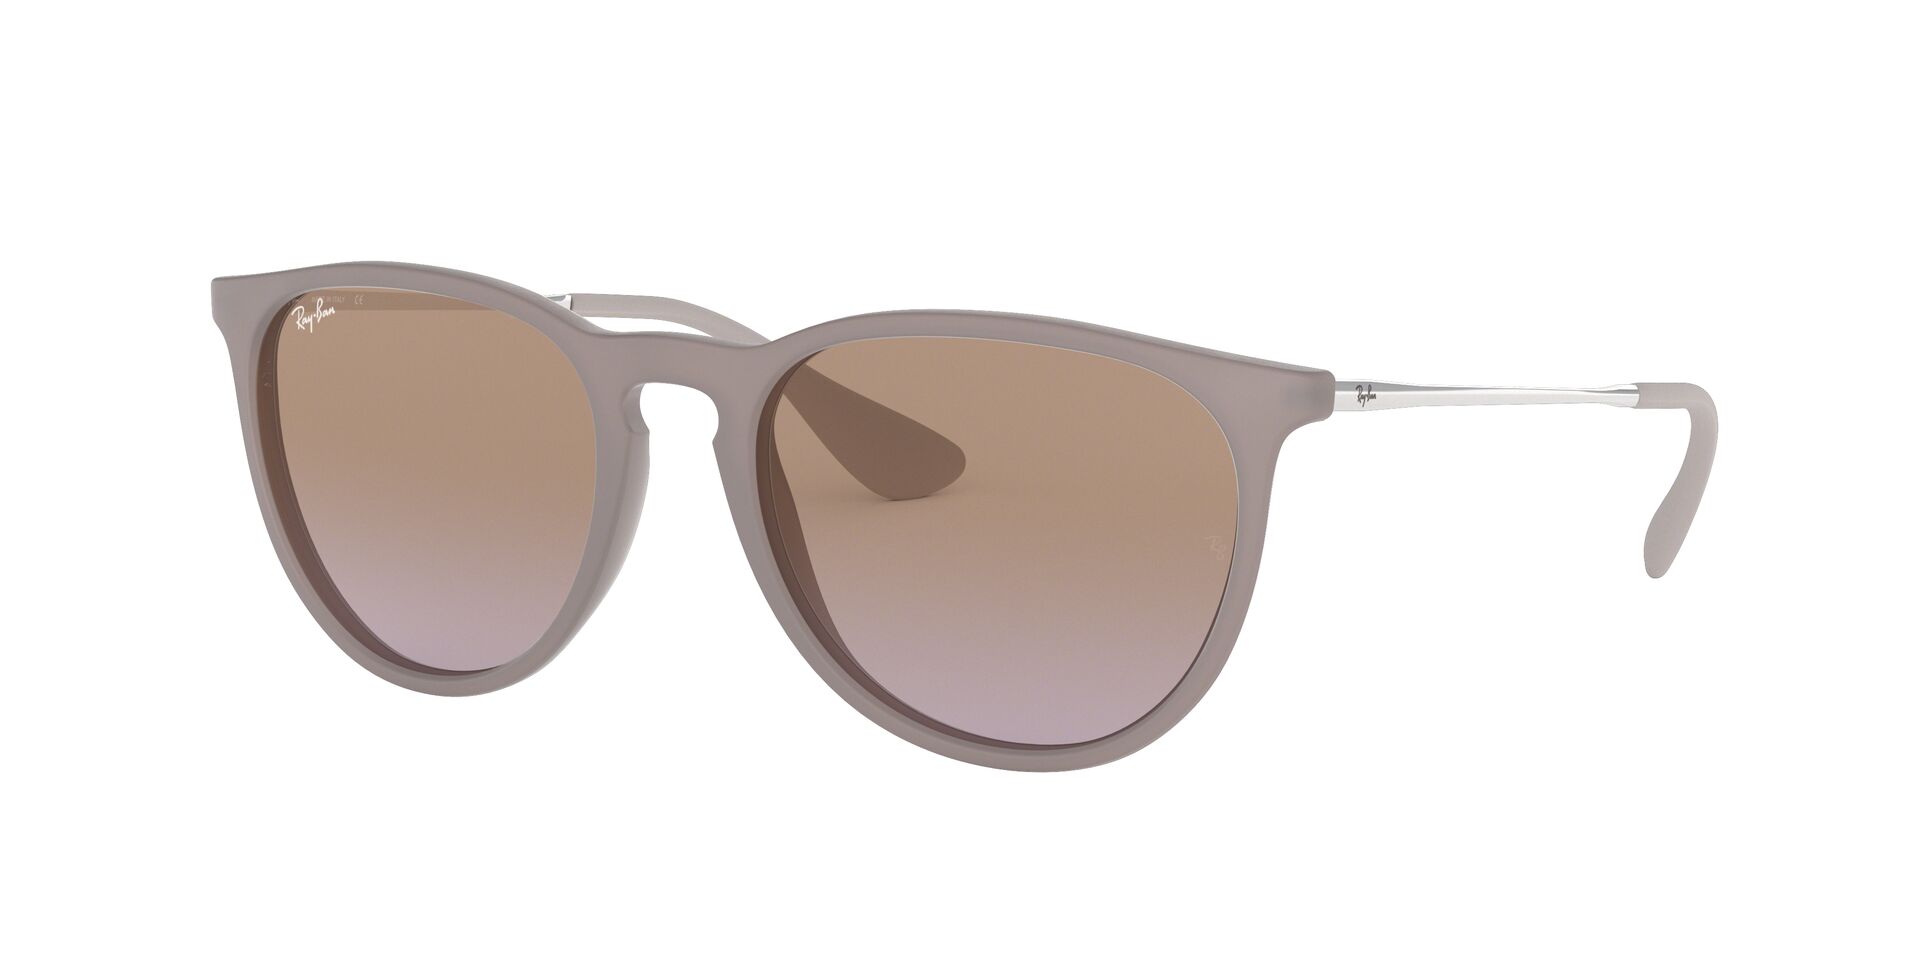 RB4171 Sunglasses | Fashion